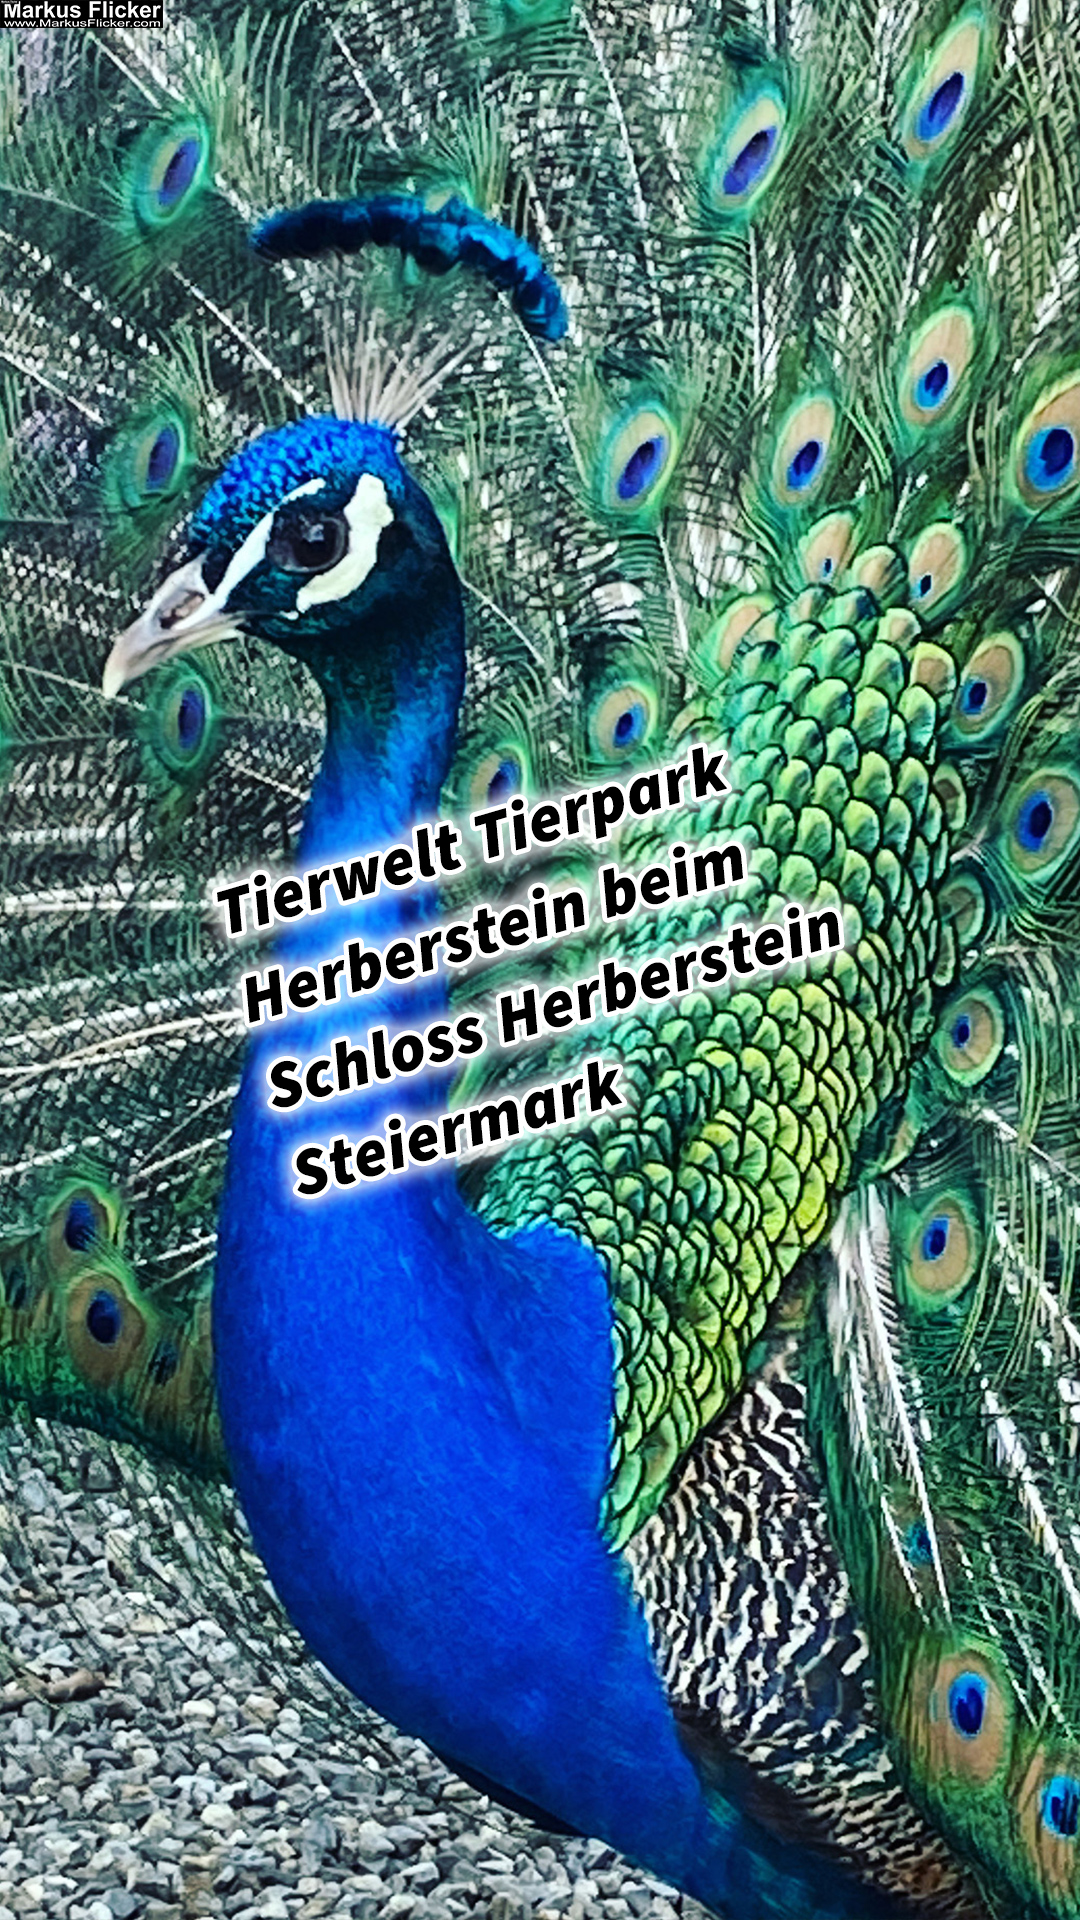 Tierwelt Tierpark Herberstein beim Schloss Herberstein Steiermark #visiststyria #visitaustria